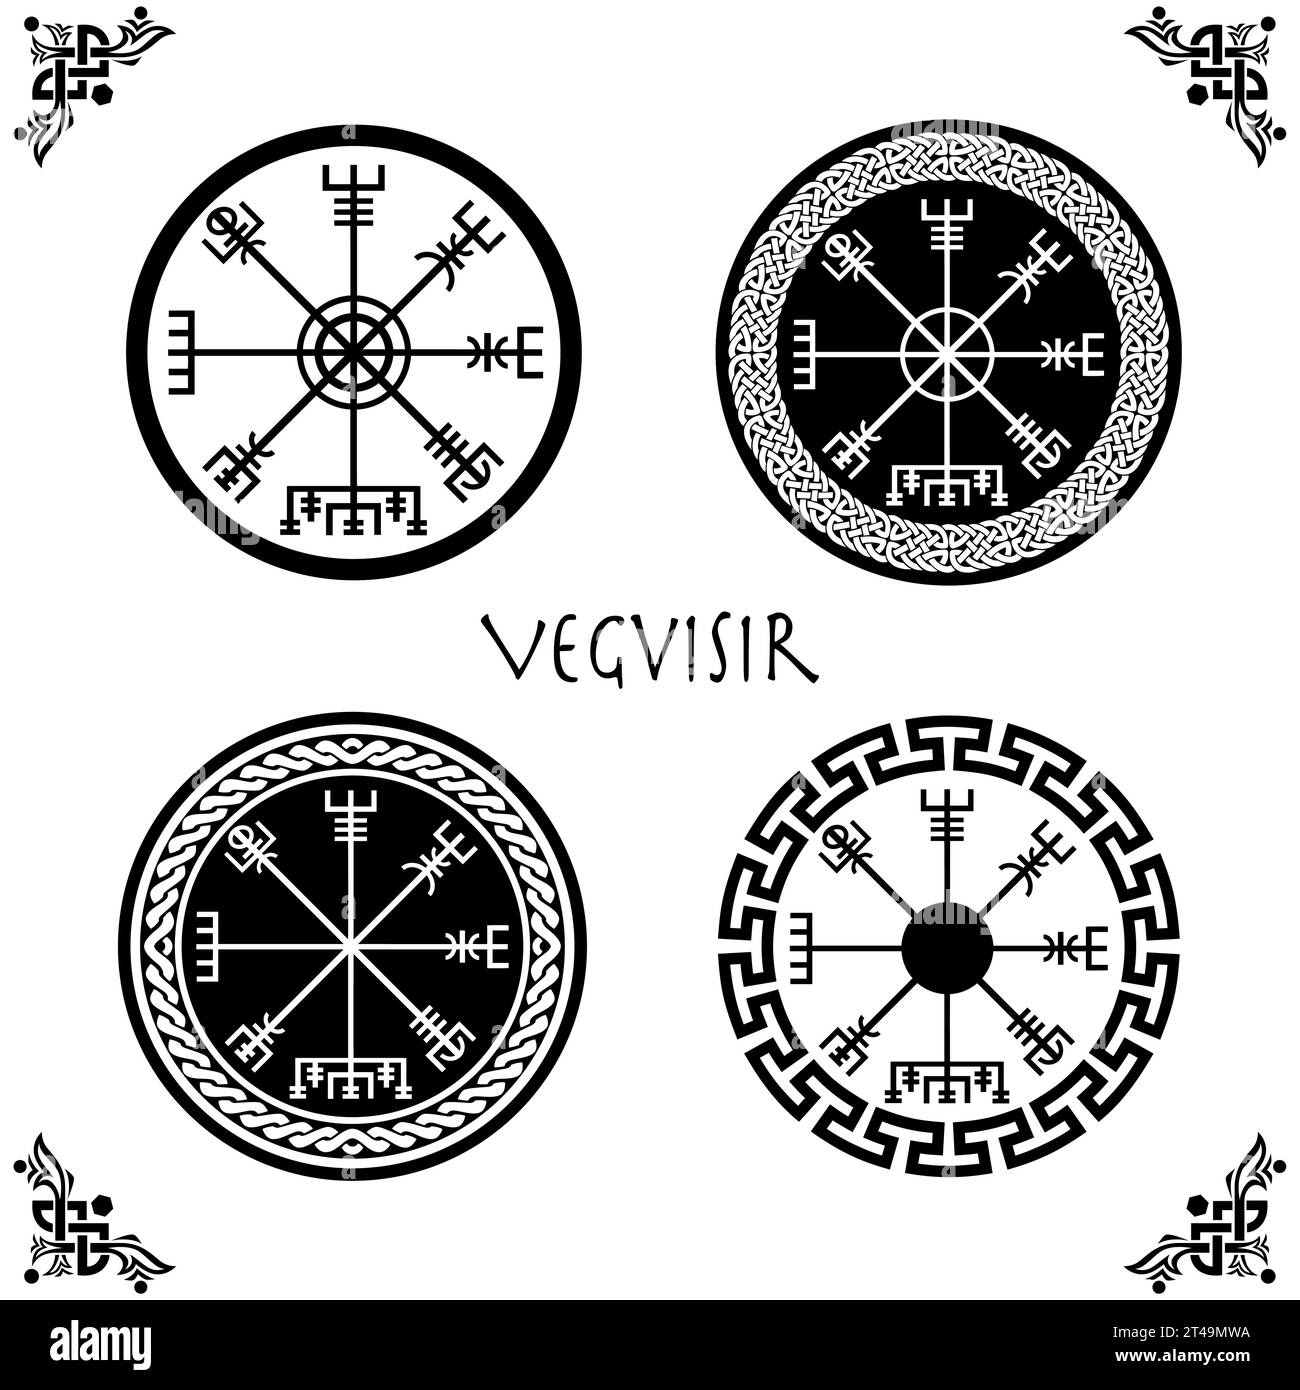 Ensemble de Viking Vegvisir Futhark Rune Magical Navigator Compass avec des cadres de cercle de noeud celtique. Talisman runique protecteur pour les voyageurs. Boussole Illustration de Vecteur